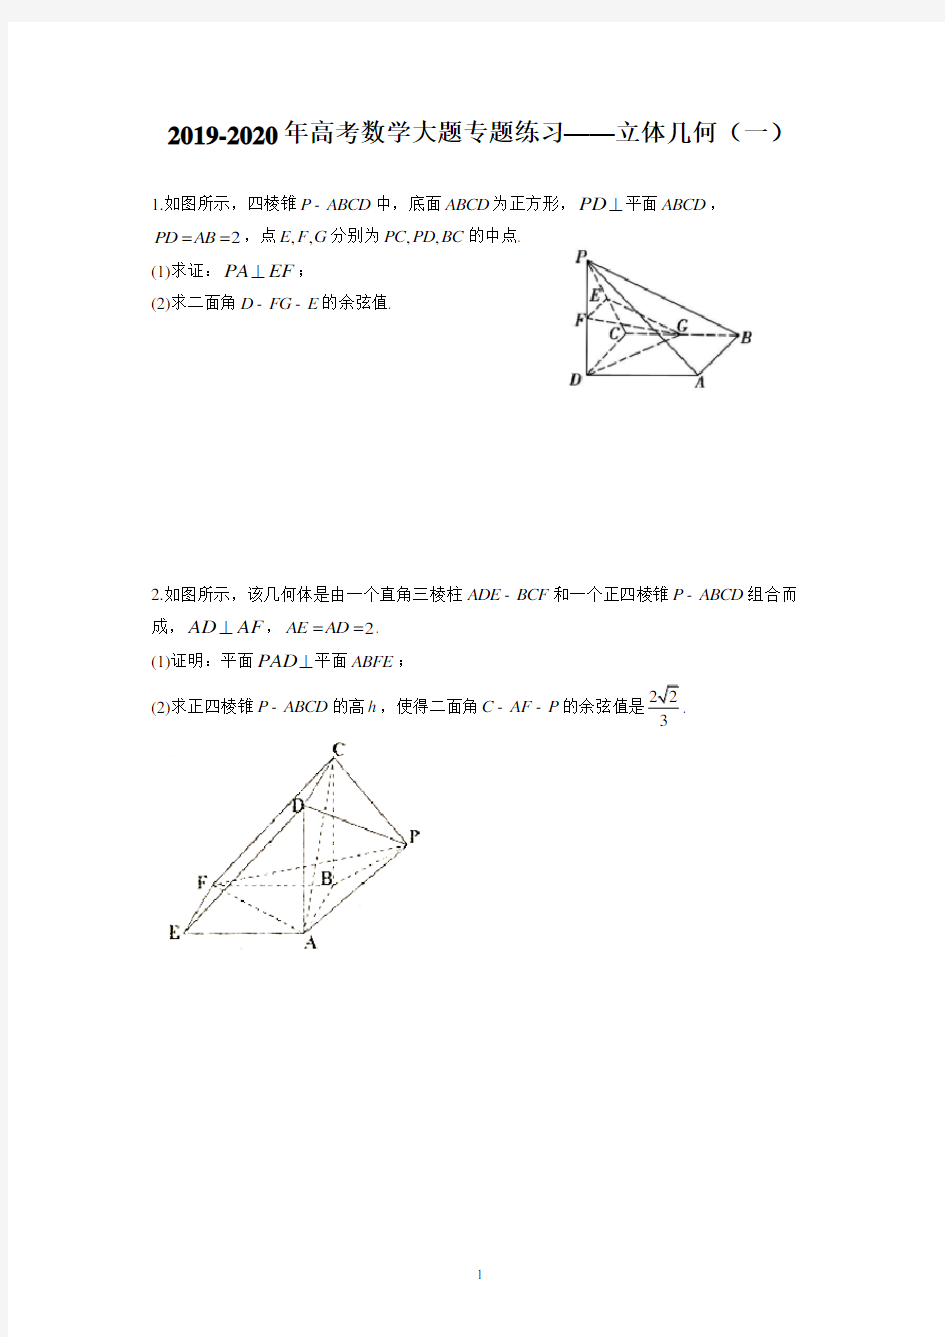 (完整)2019-2020年高考数学大题专题练习——立体几何(一)